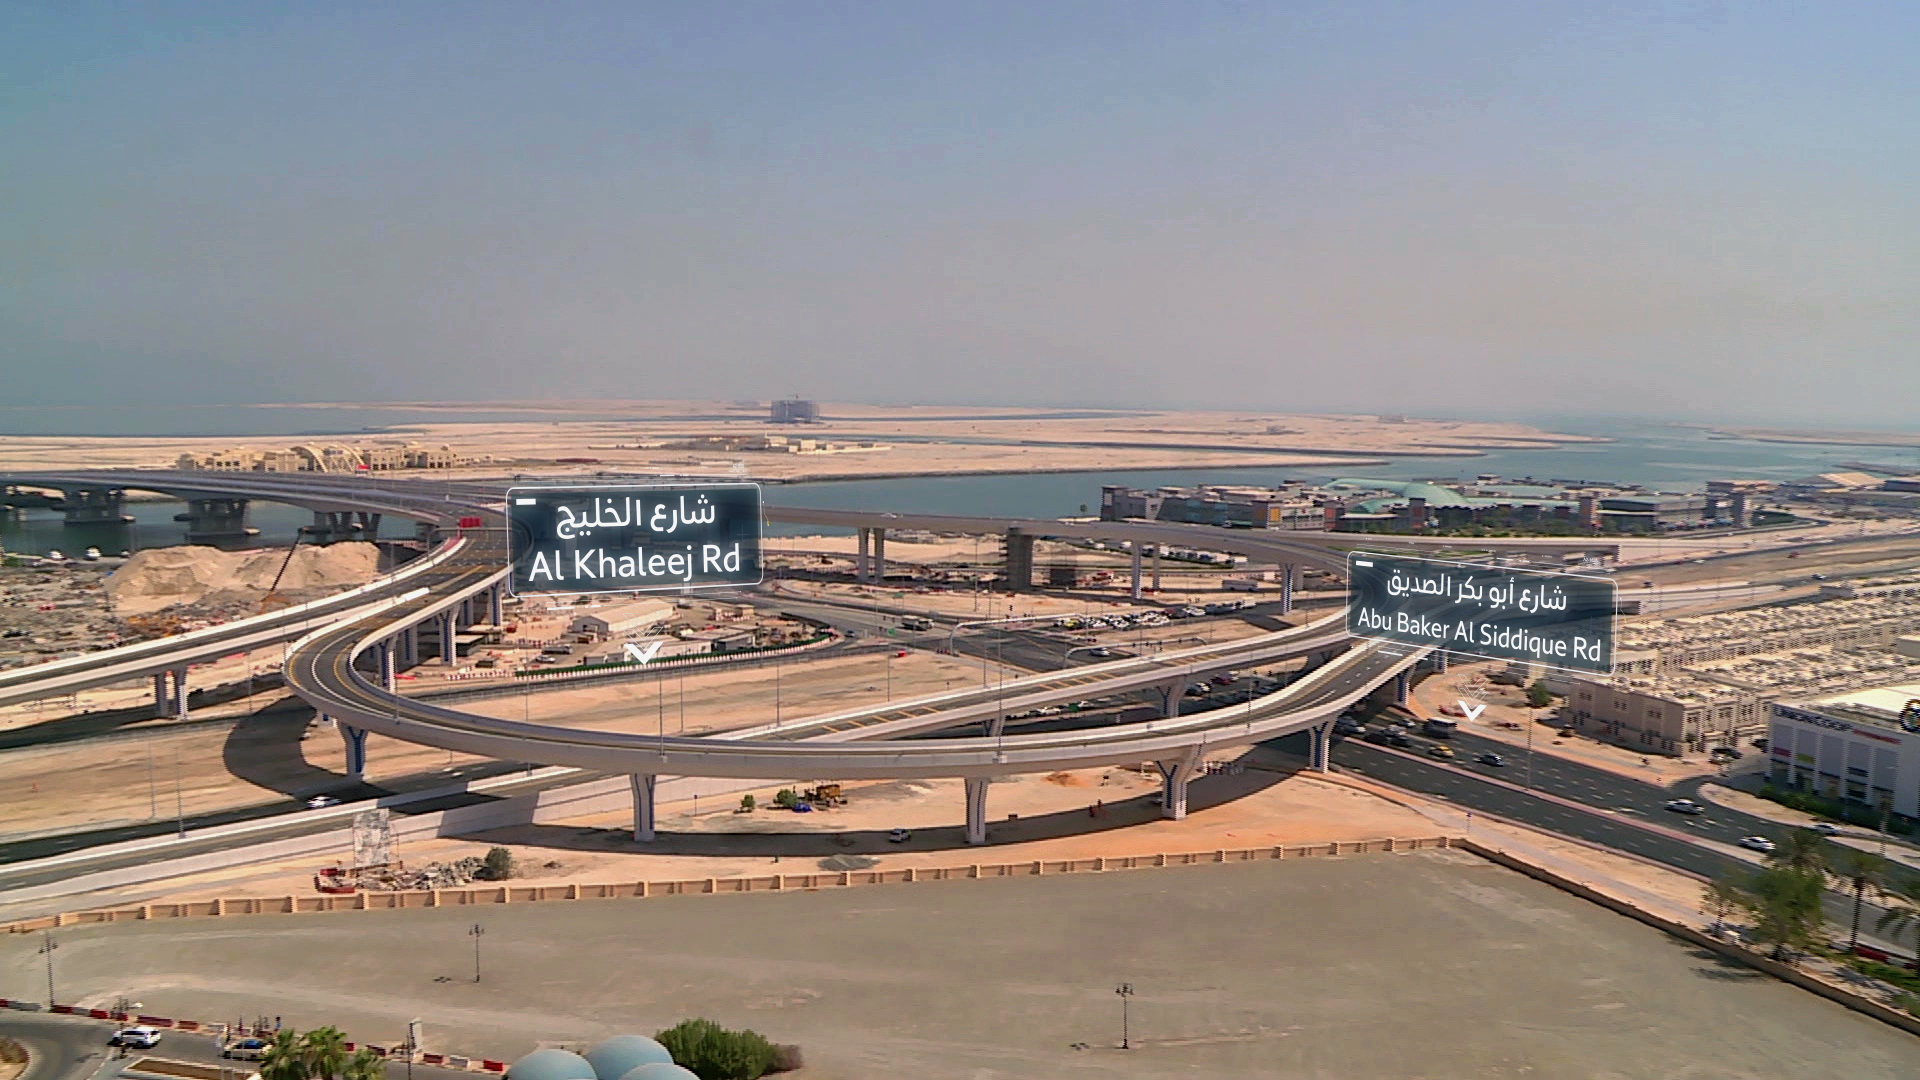 ‫طرق دبي تفتتح خمسة جسور مؤدية لجزر ديرة بطول 2571 متراً ‬